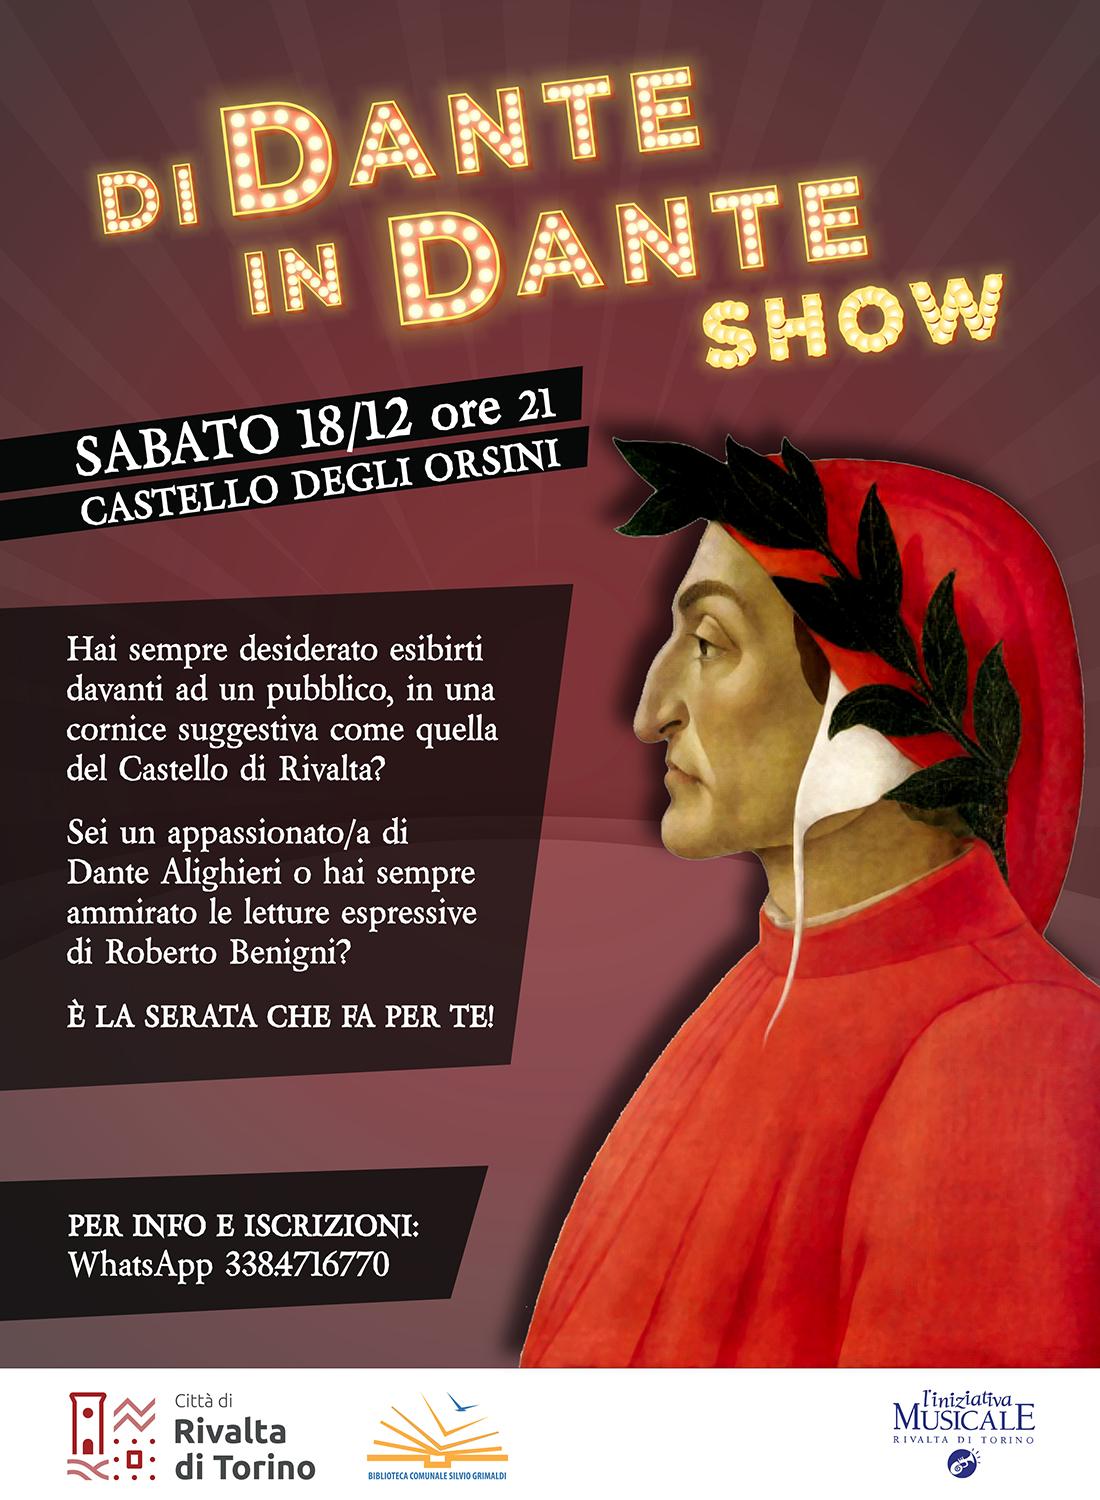 Dante show